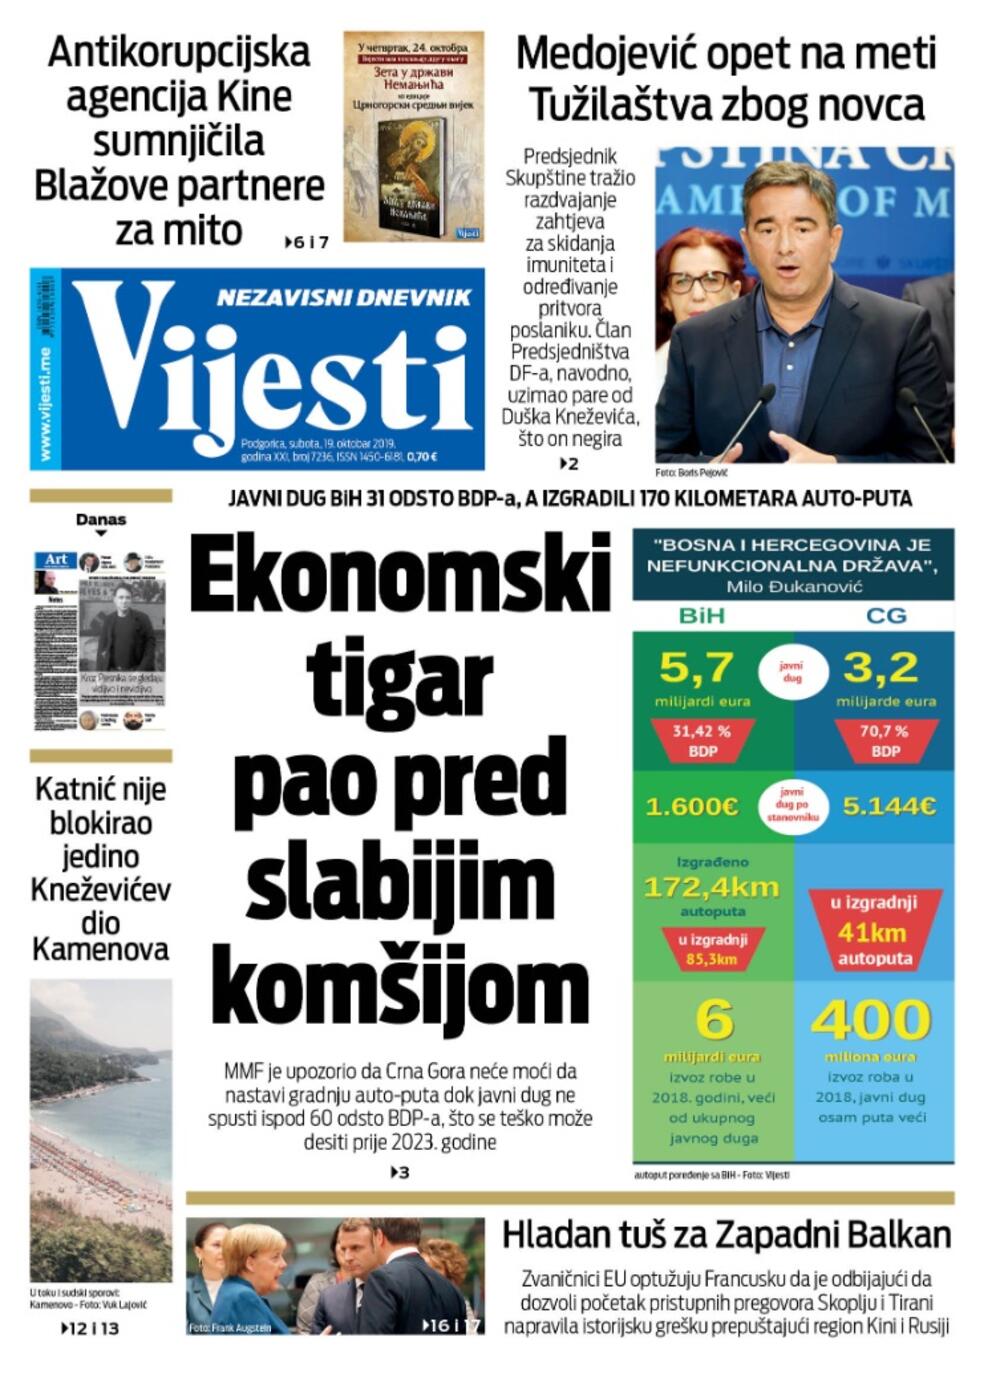 Naslovna strana "Vijesti" za 19. oktobar 2019., Foto: Vijesti